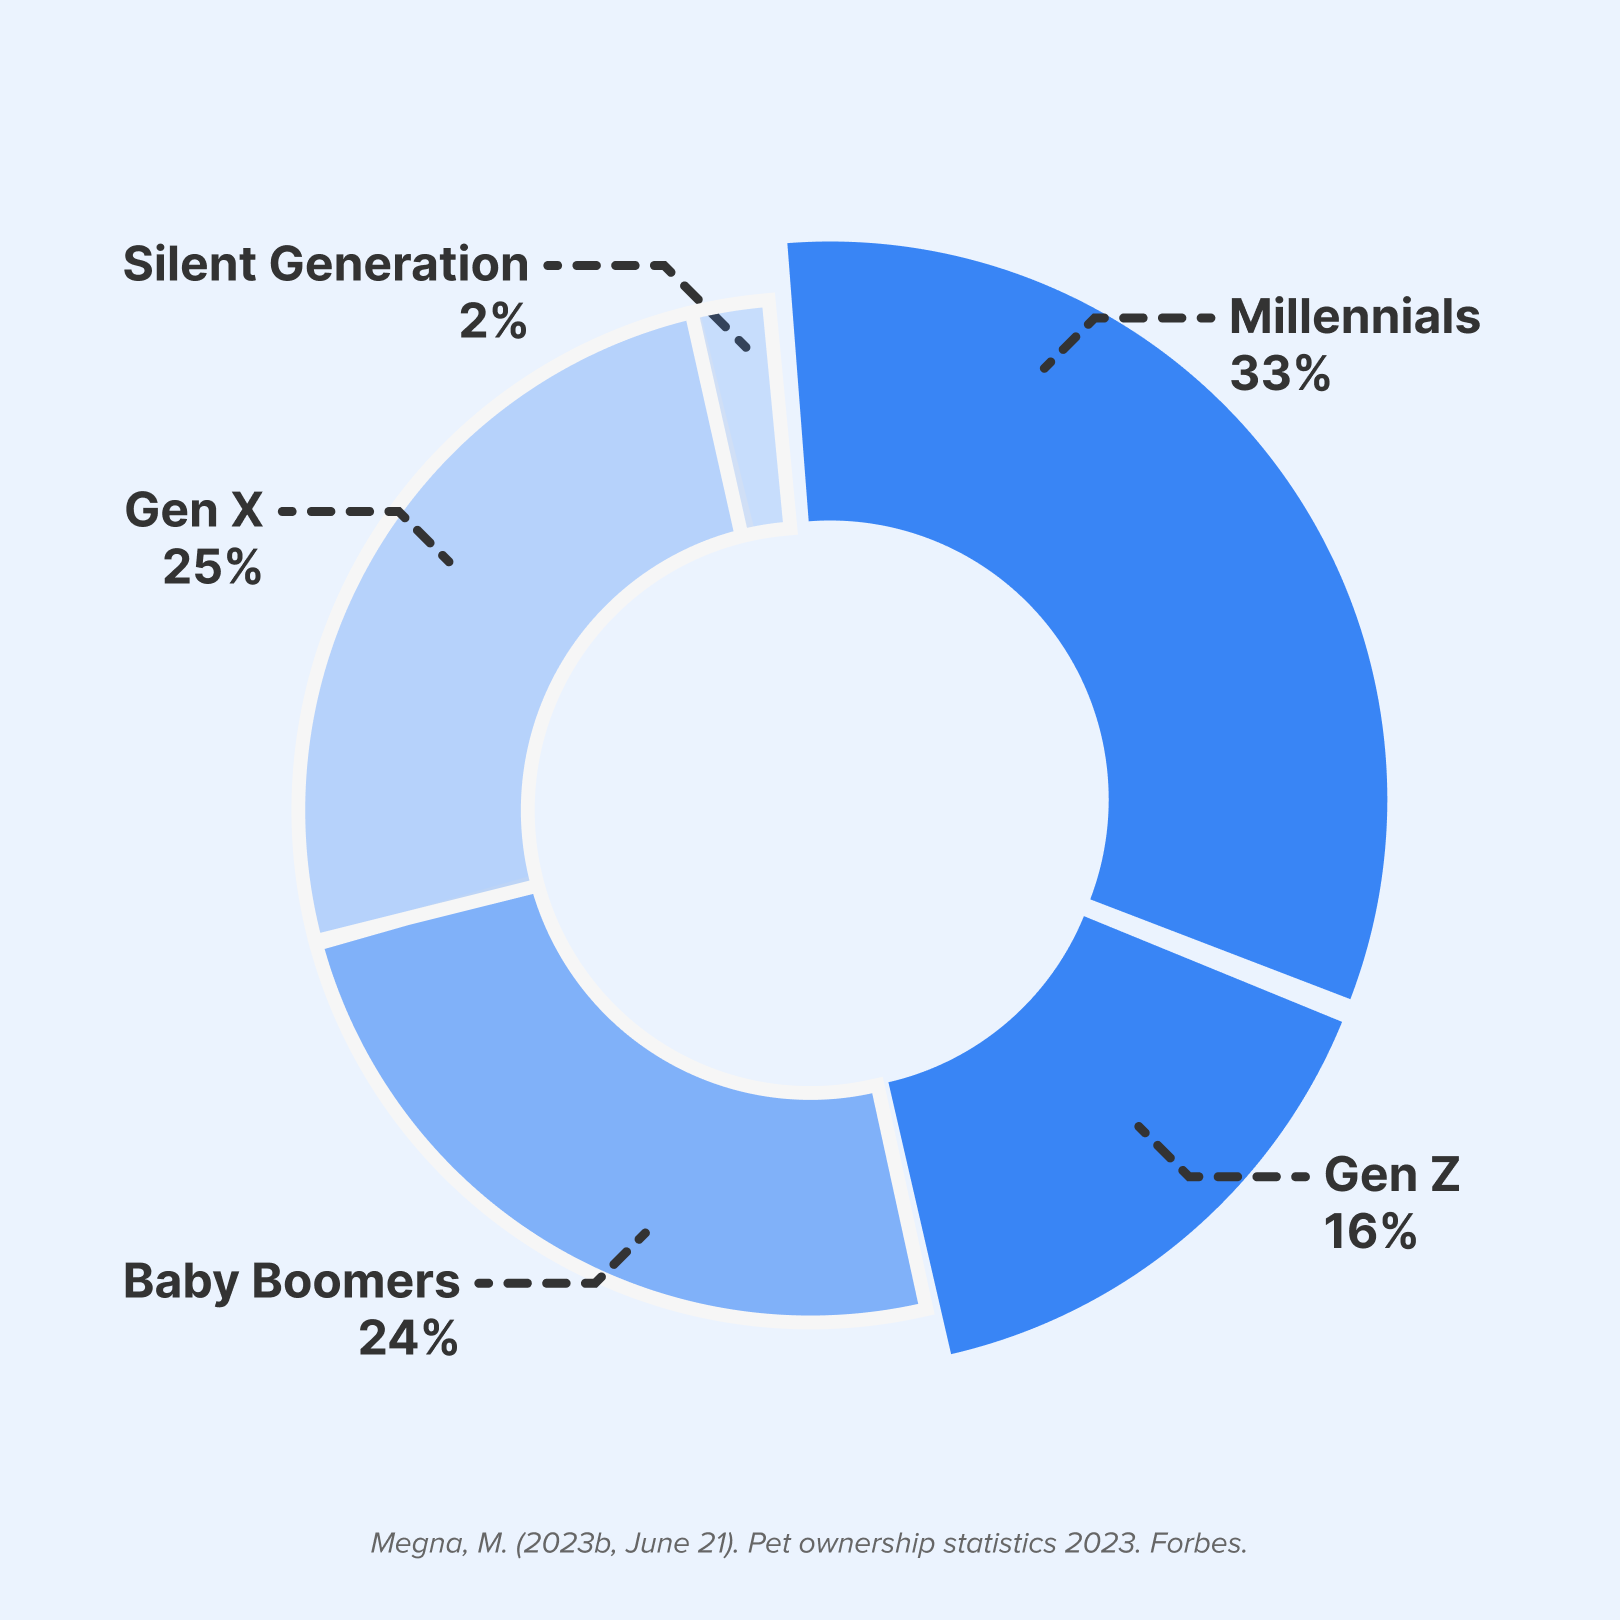 Millennials and gen Z